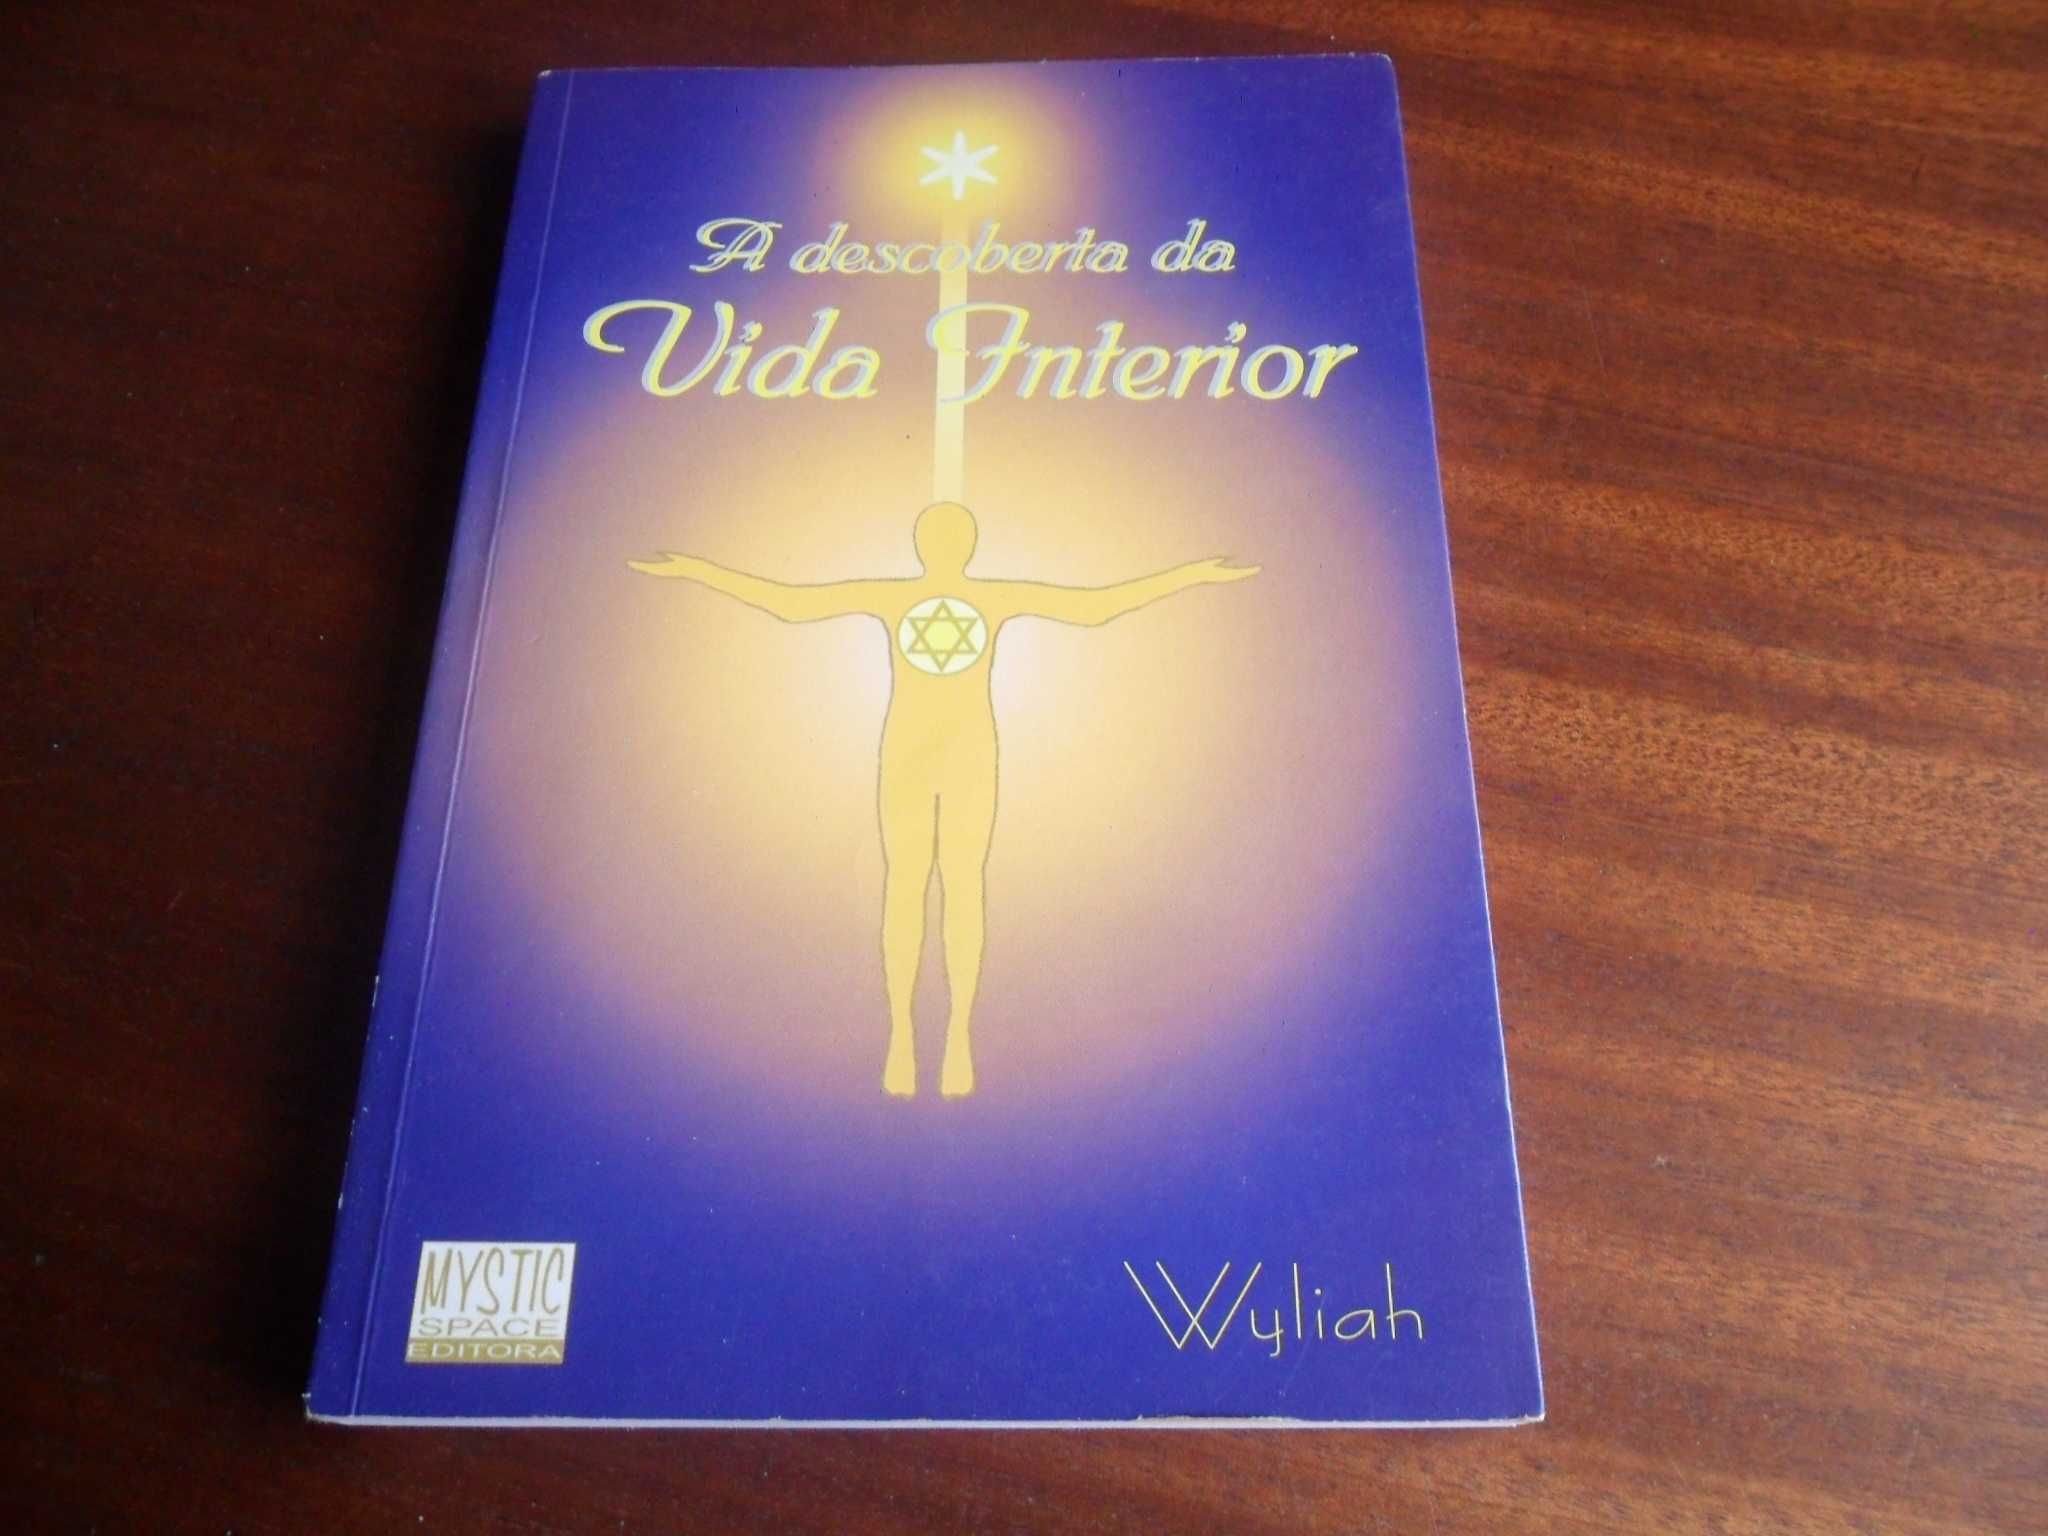 "A Descoberta da Vida Interior" de Wyliah - 1ª Edição de 1998